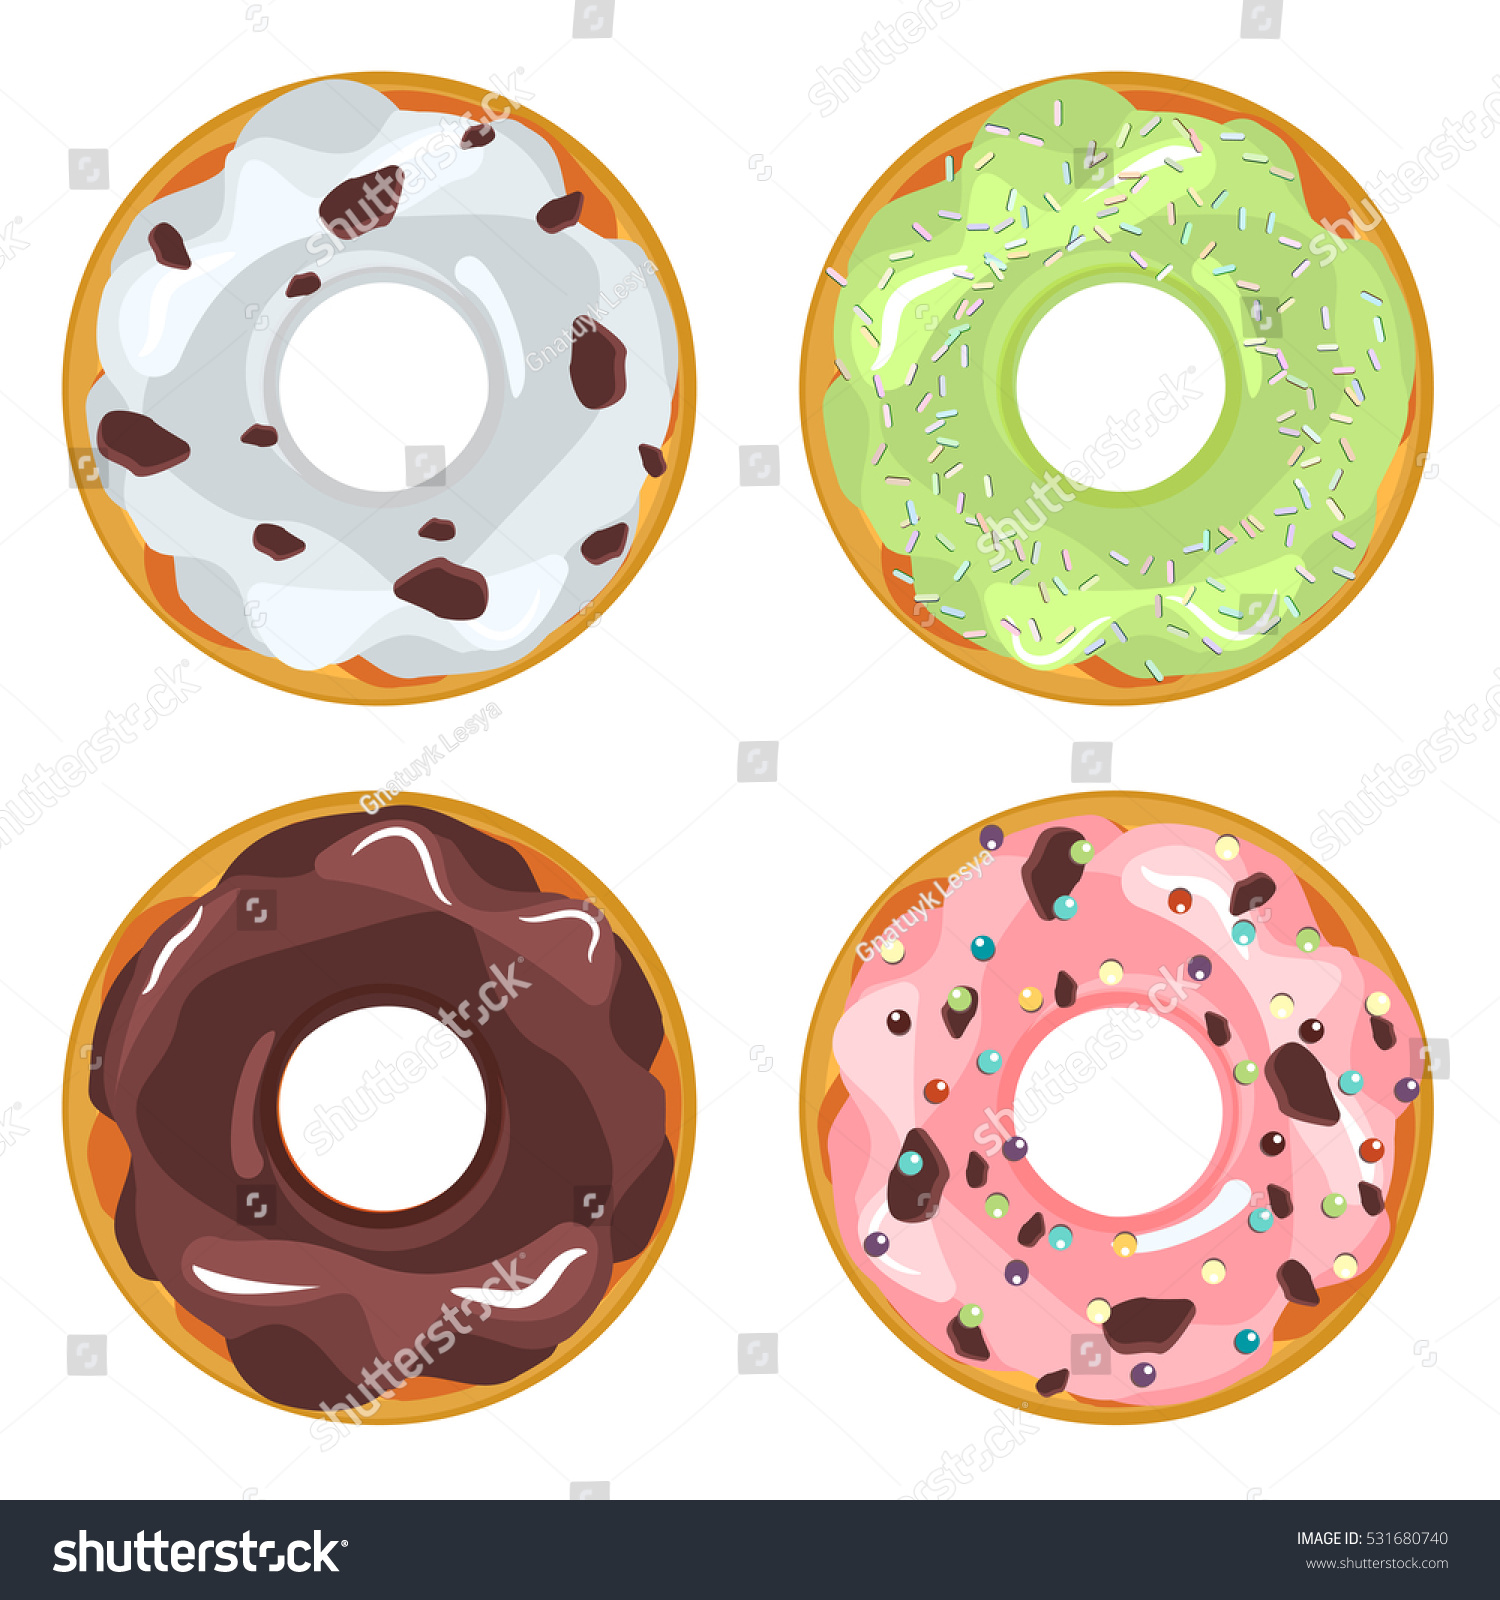 clipart donut logo - photo #46